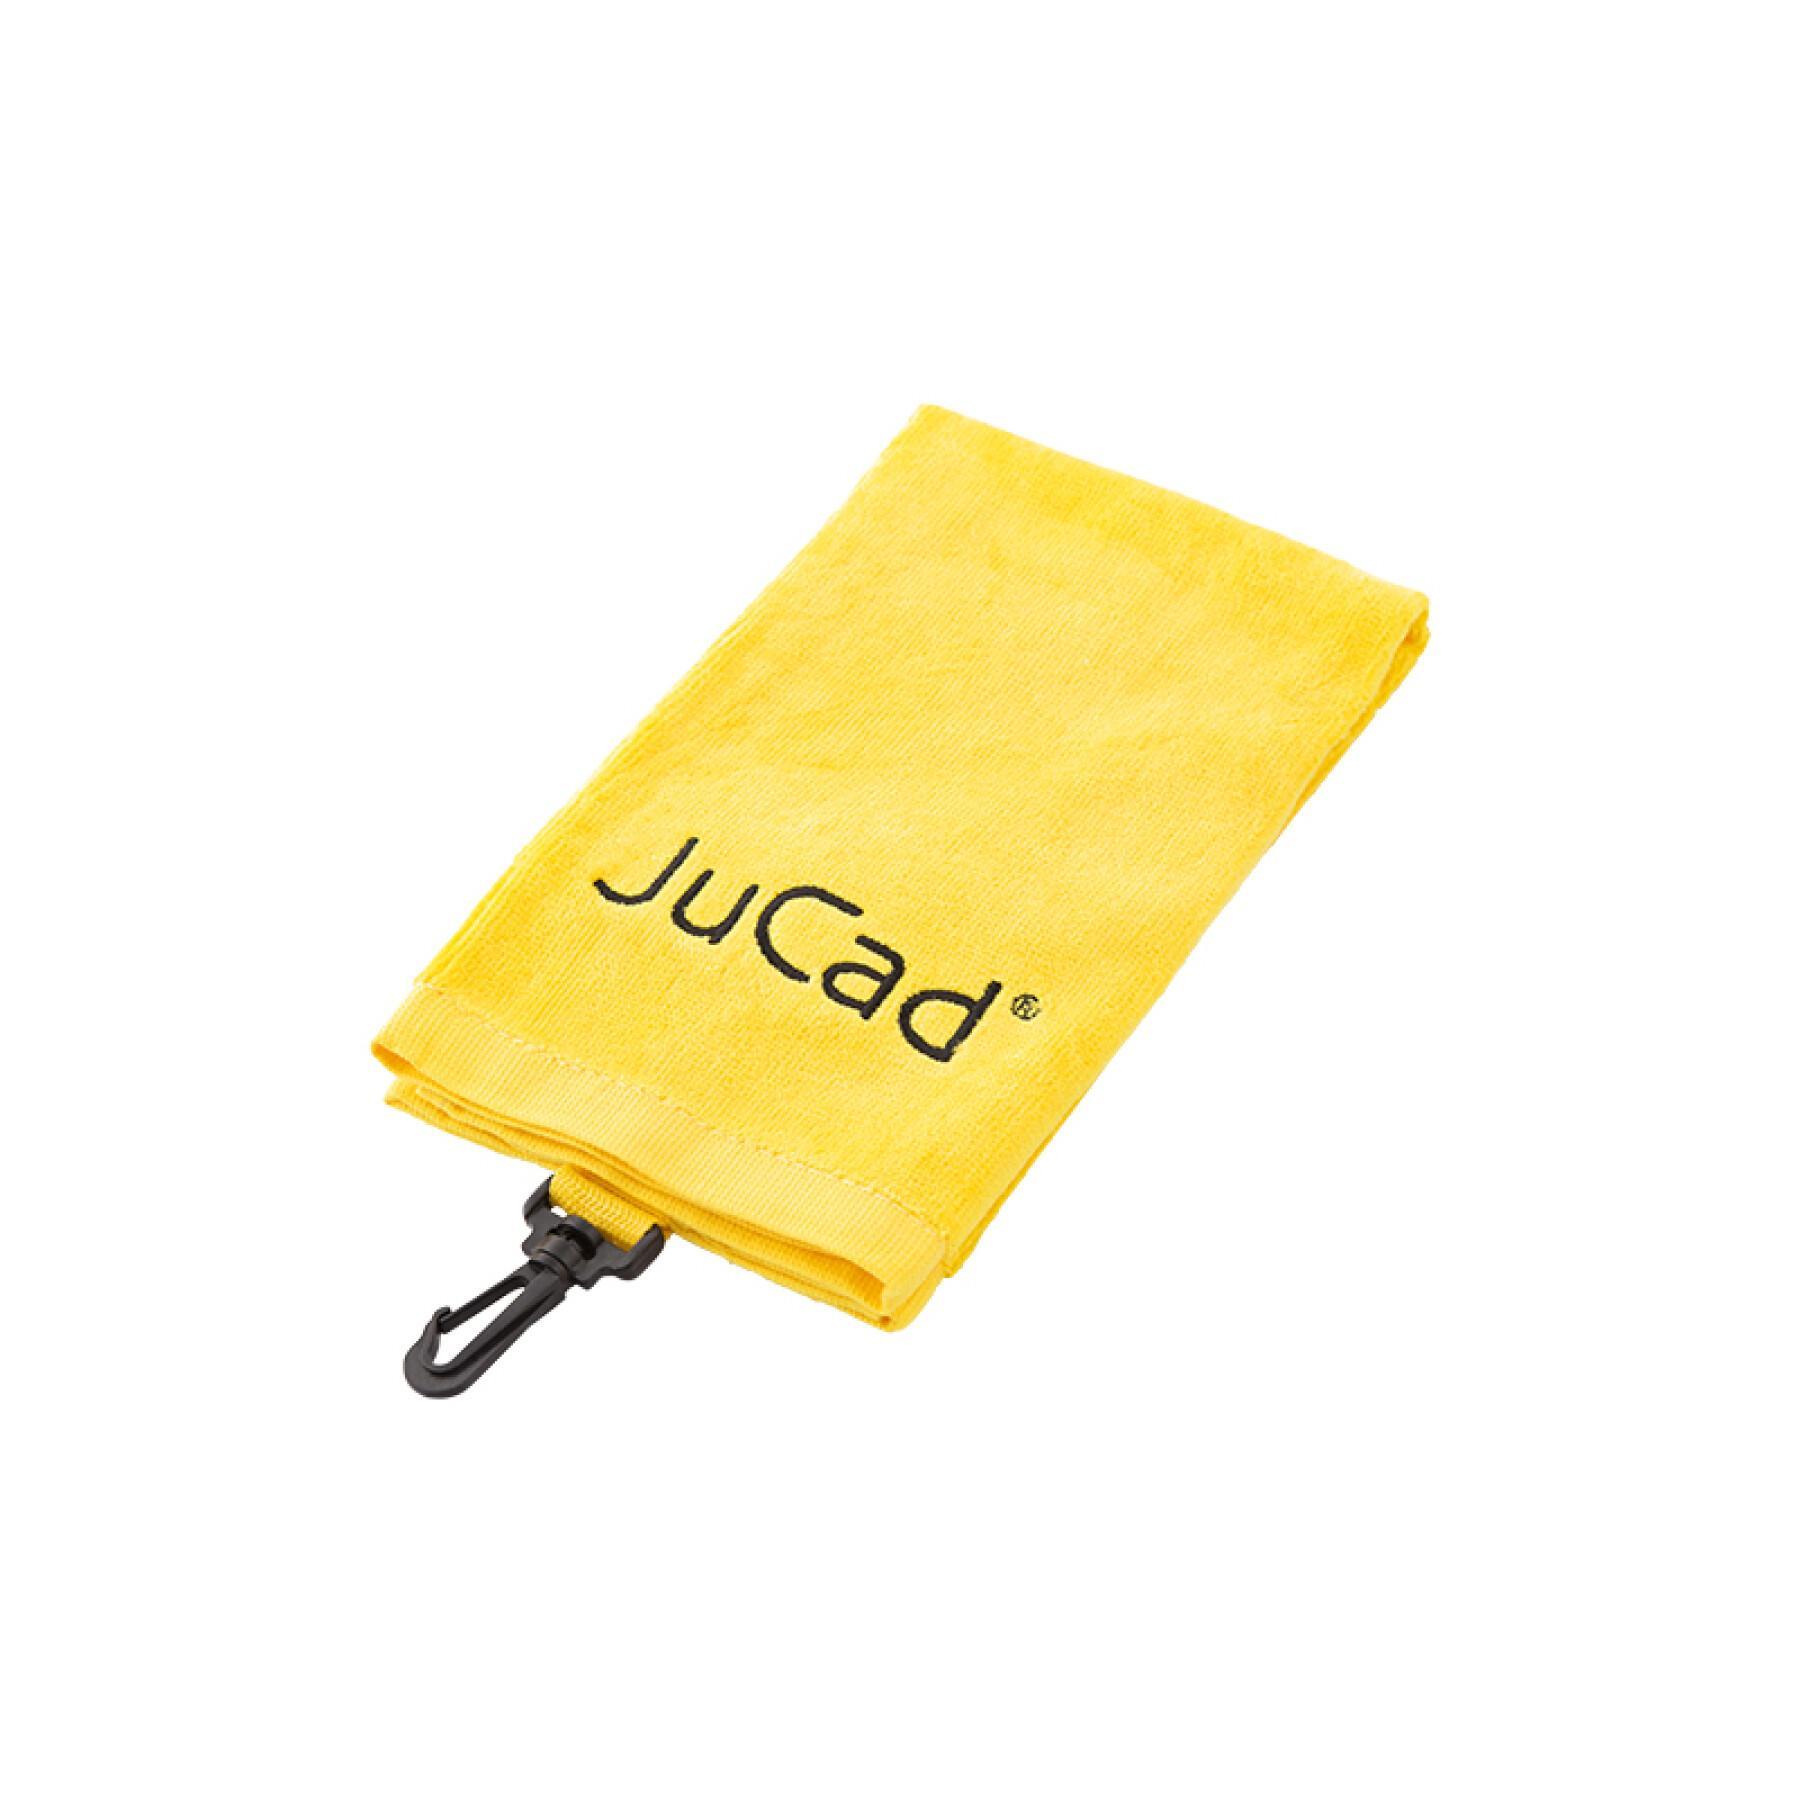 Handduk för golf JuCad